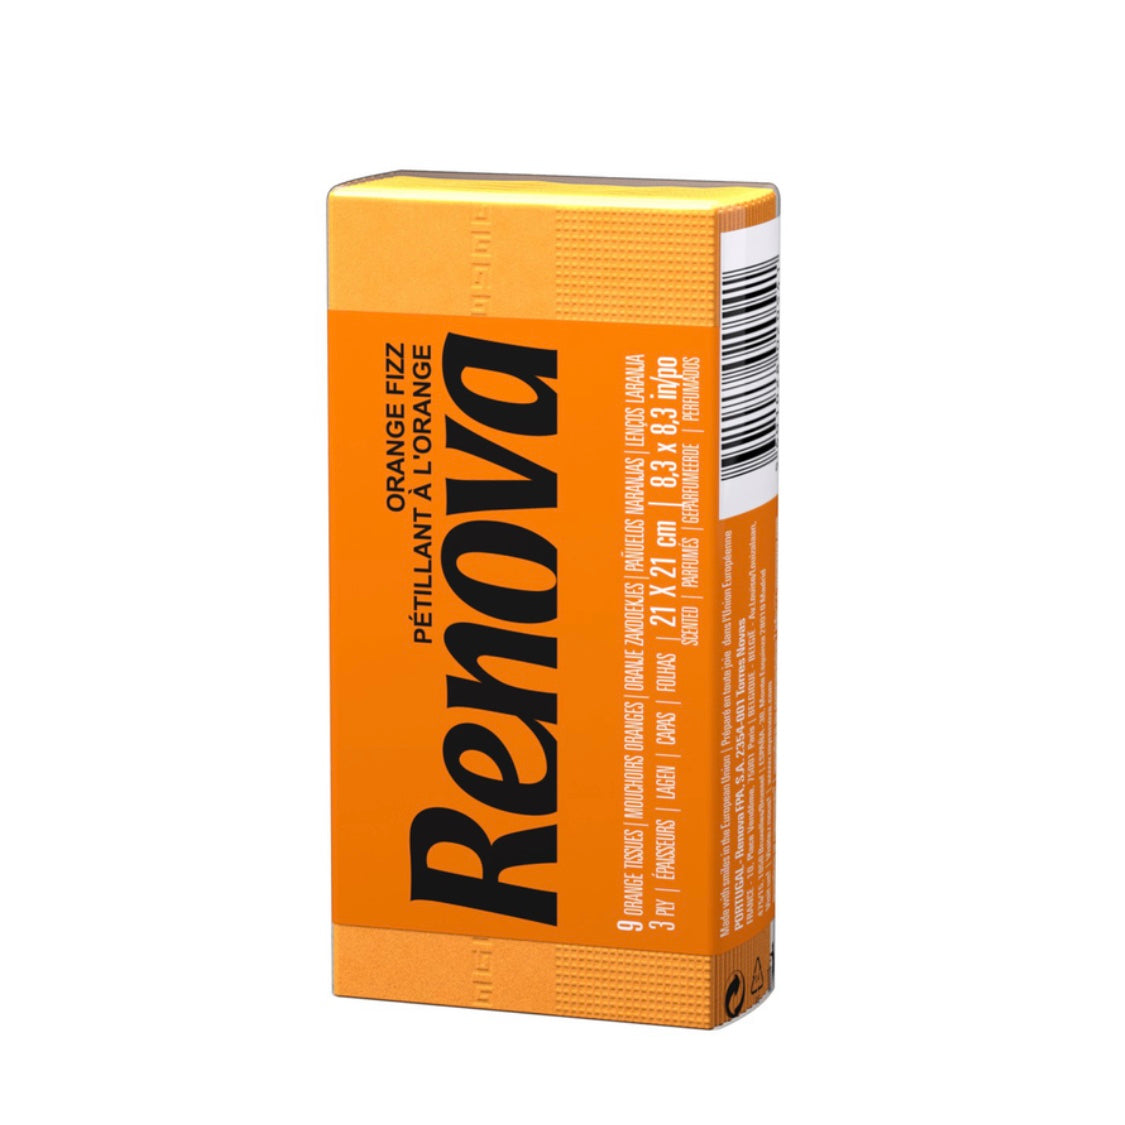 Renova Red Label Pocket Tissues Mix